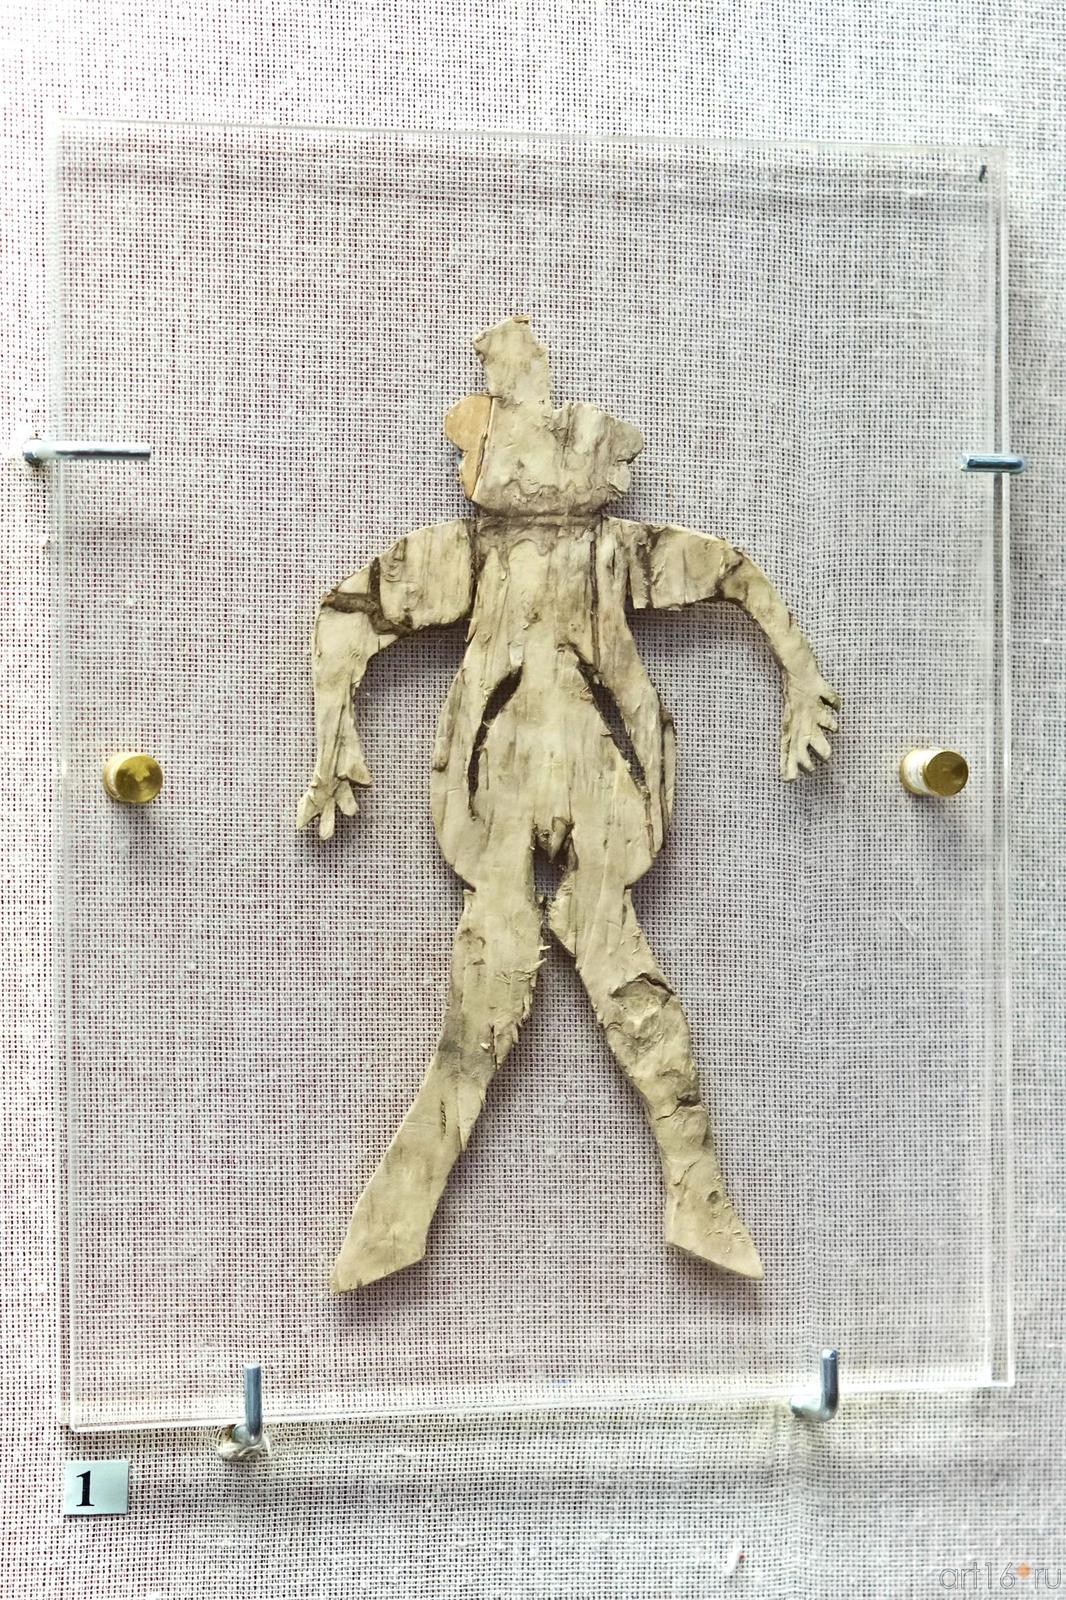 Фото №102586. 1.Фигурки люден Кеше фигуралары IV - II вв. до н.э. Береста. Figurines of people 4th - 2nd centuries ВС Birch bark